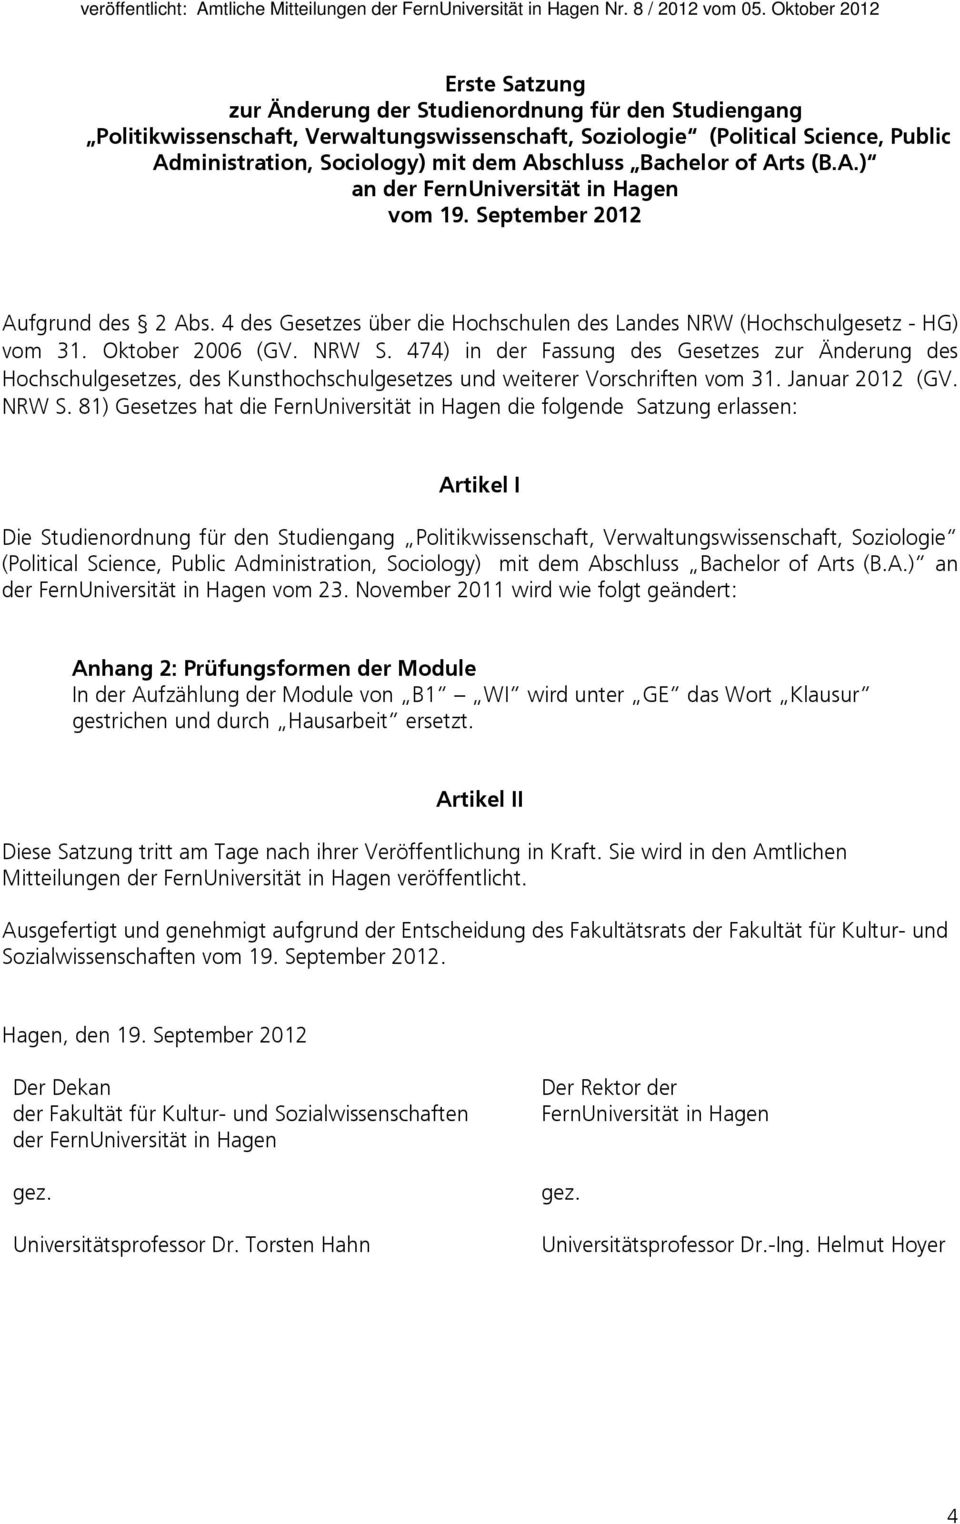 NRW S. 474) in der Fassung des Gesetzes zur Änderung des Hochschulgesetzes, des Kunsthochschulgesetzes und weiterer Vorschriften vom 31. Januar 2012 (GV. NRW S.